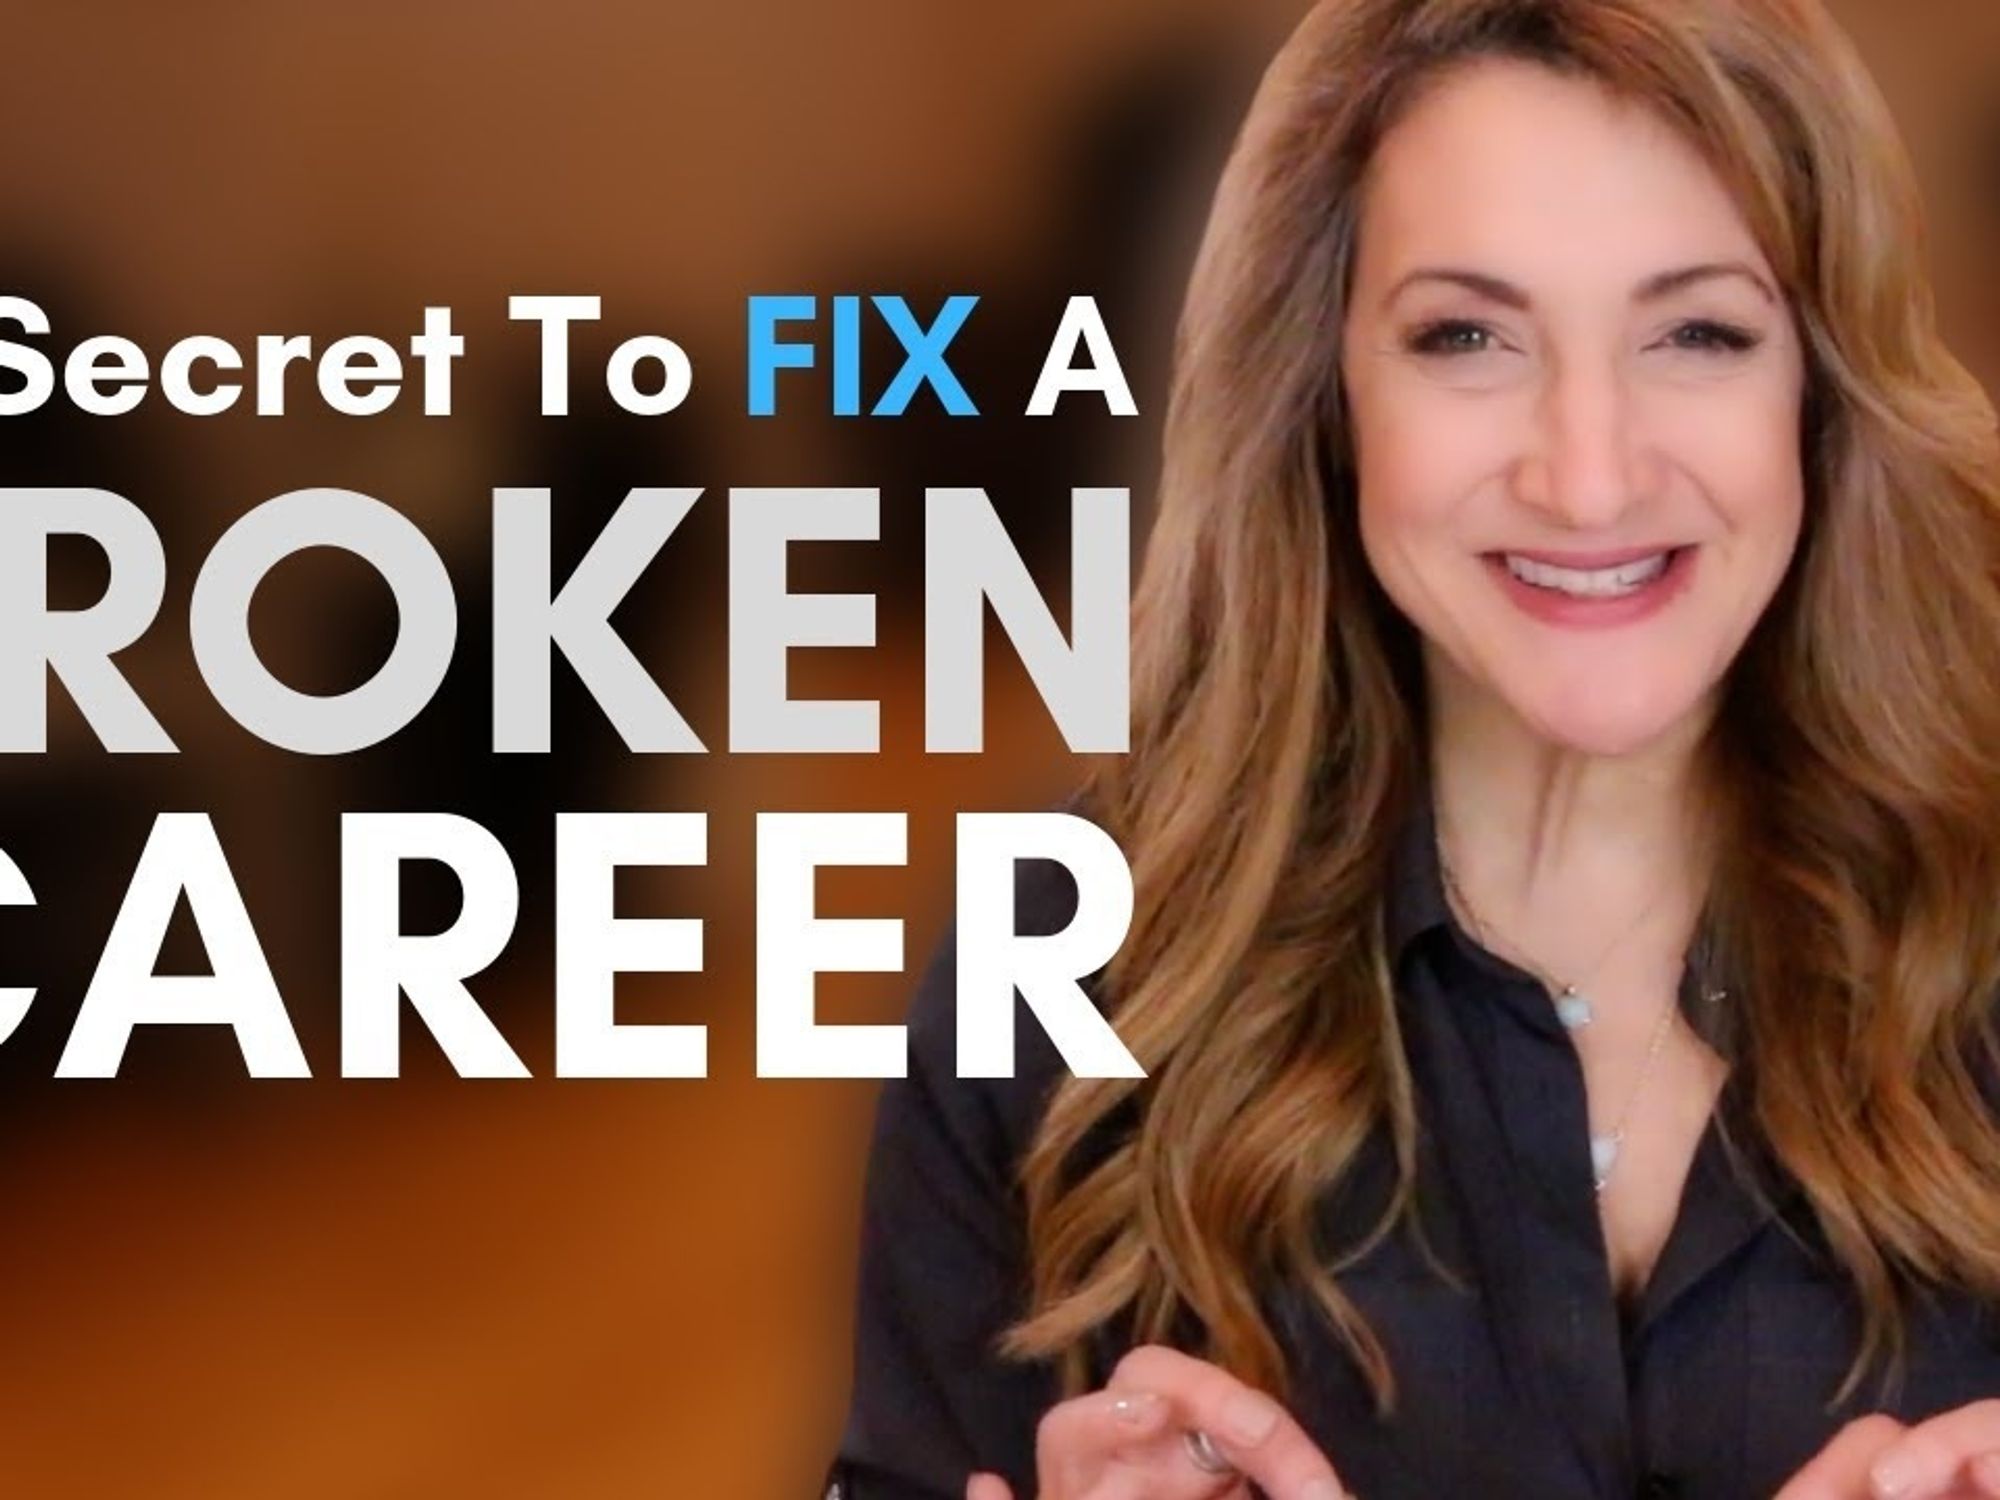 How To Fix A Broken Career